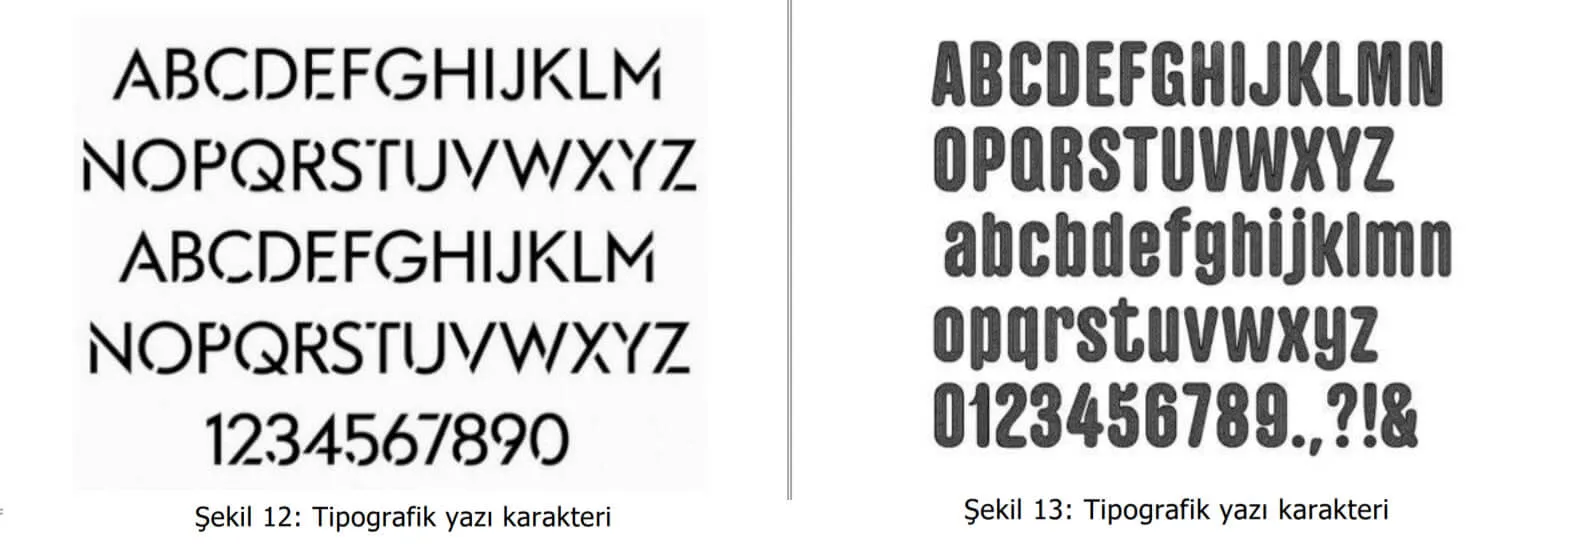 tipografik yazı karakter örnekleri-bakırköy web tasarım